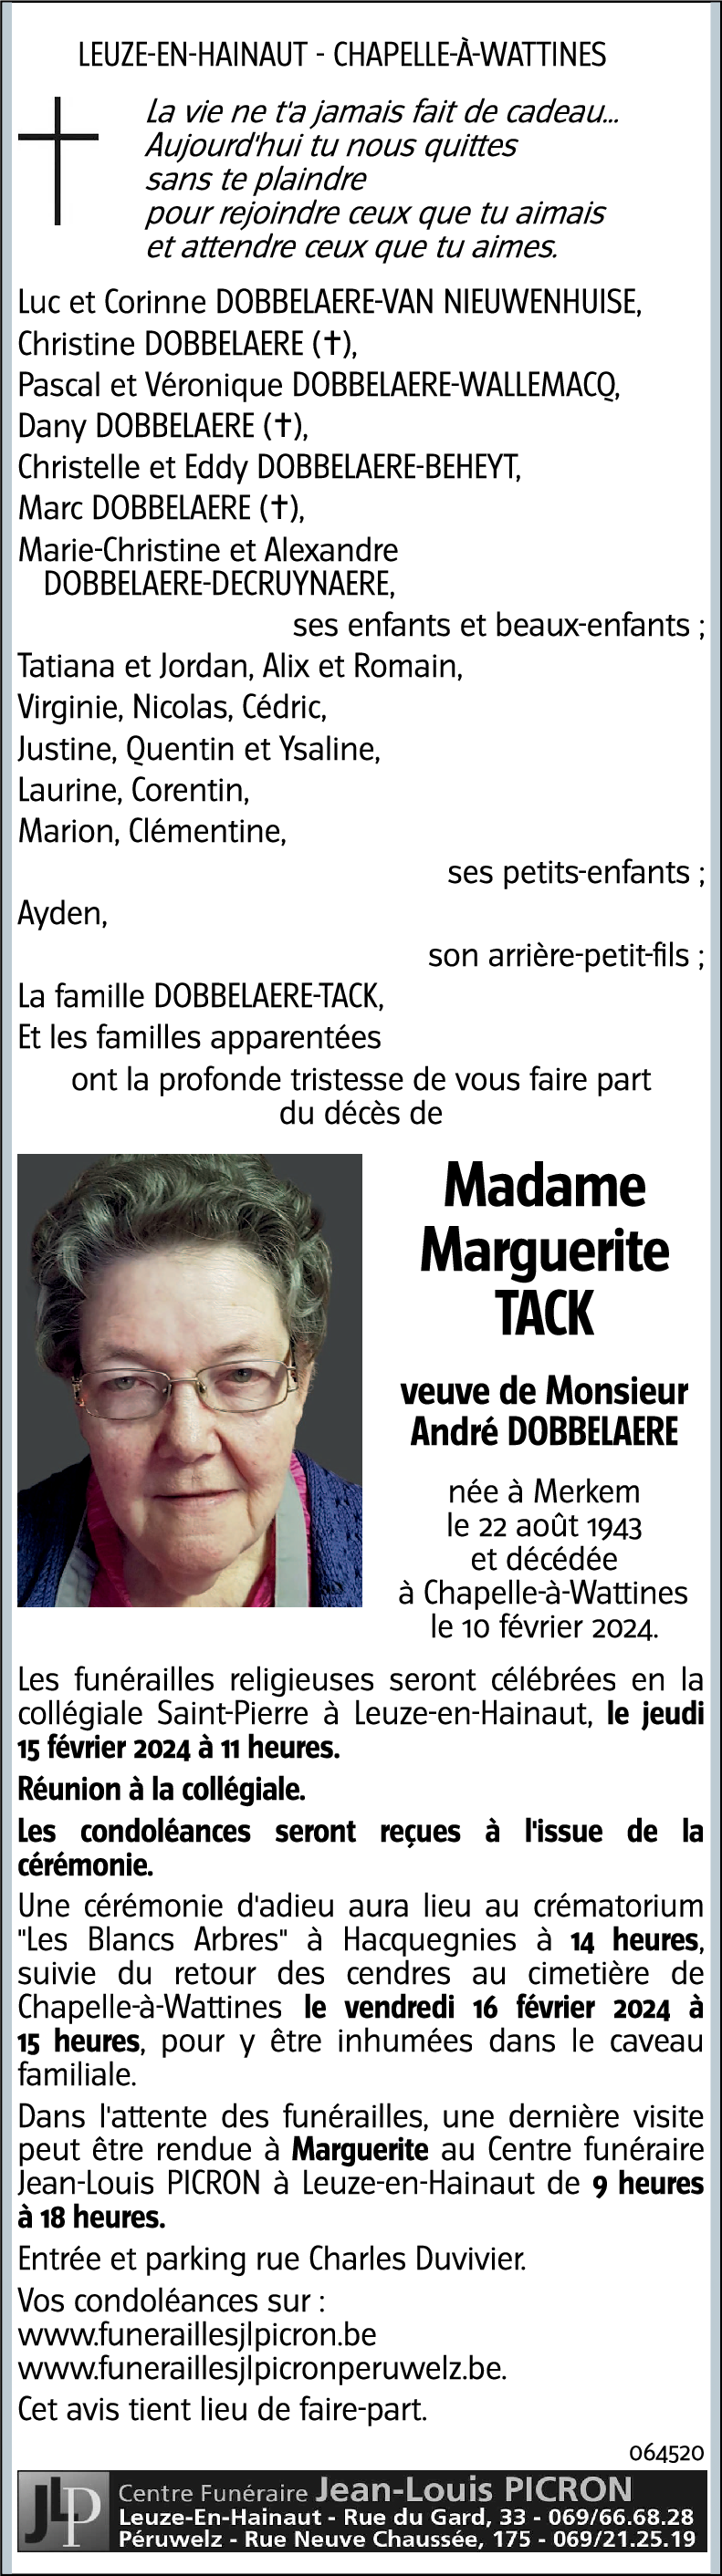 Marguerite TACK